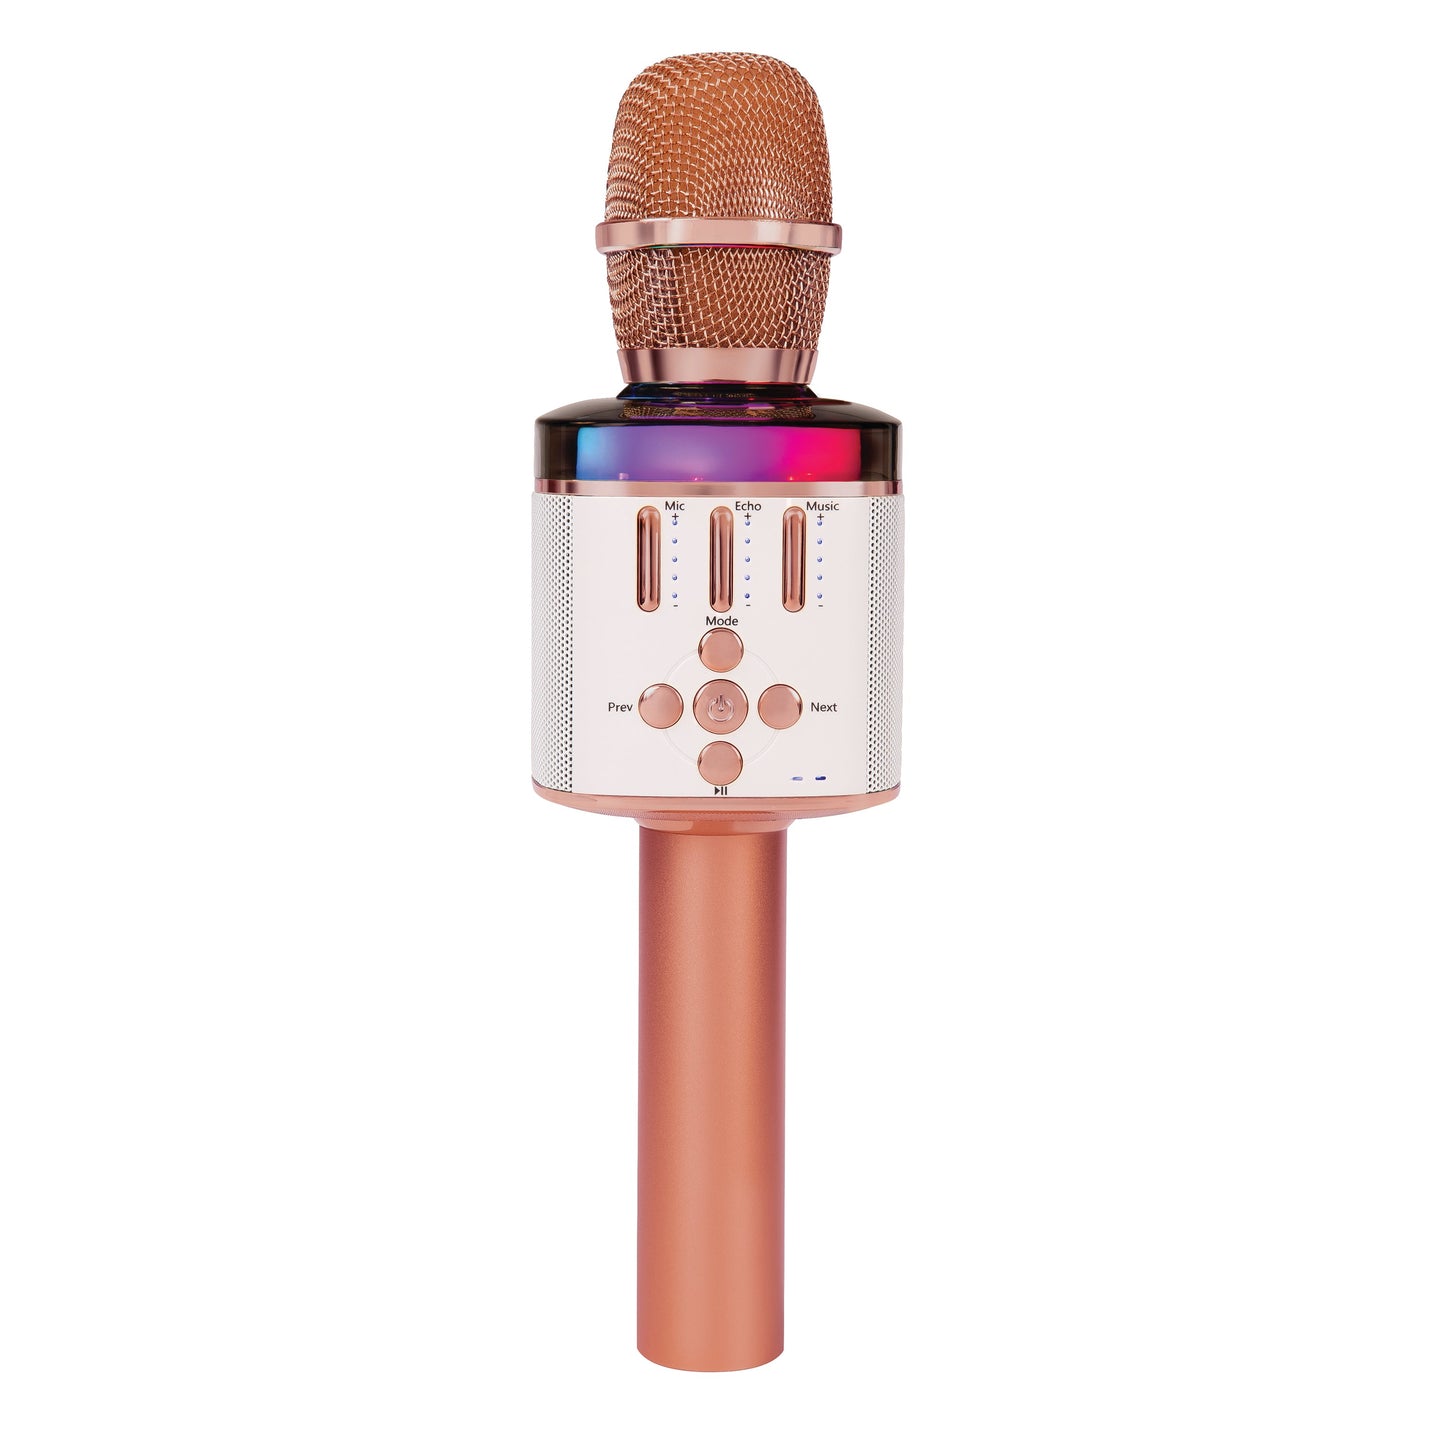 Easy Karaoke Bluetooth Wireless Microphone - maplin.co.uk